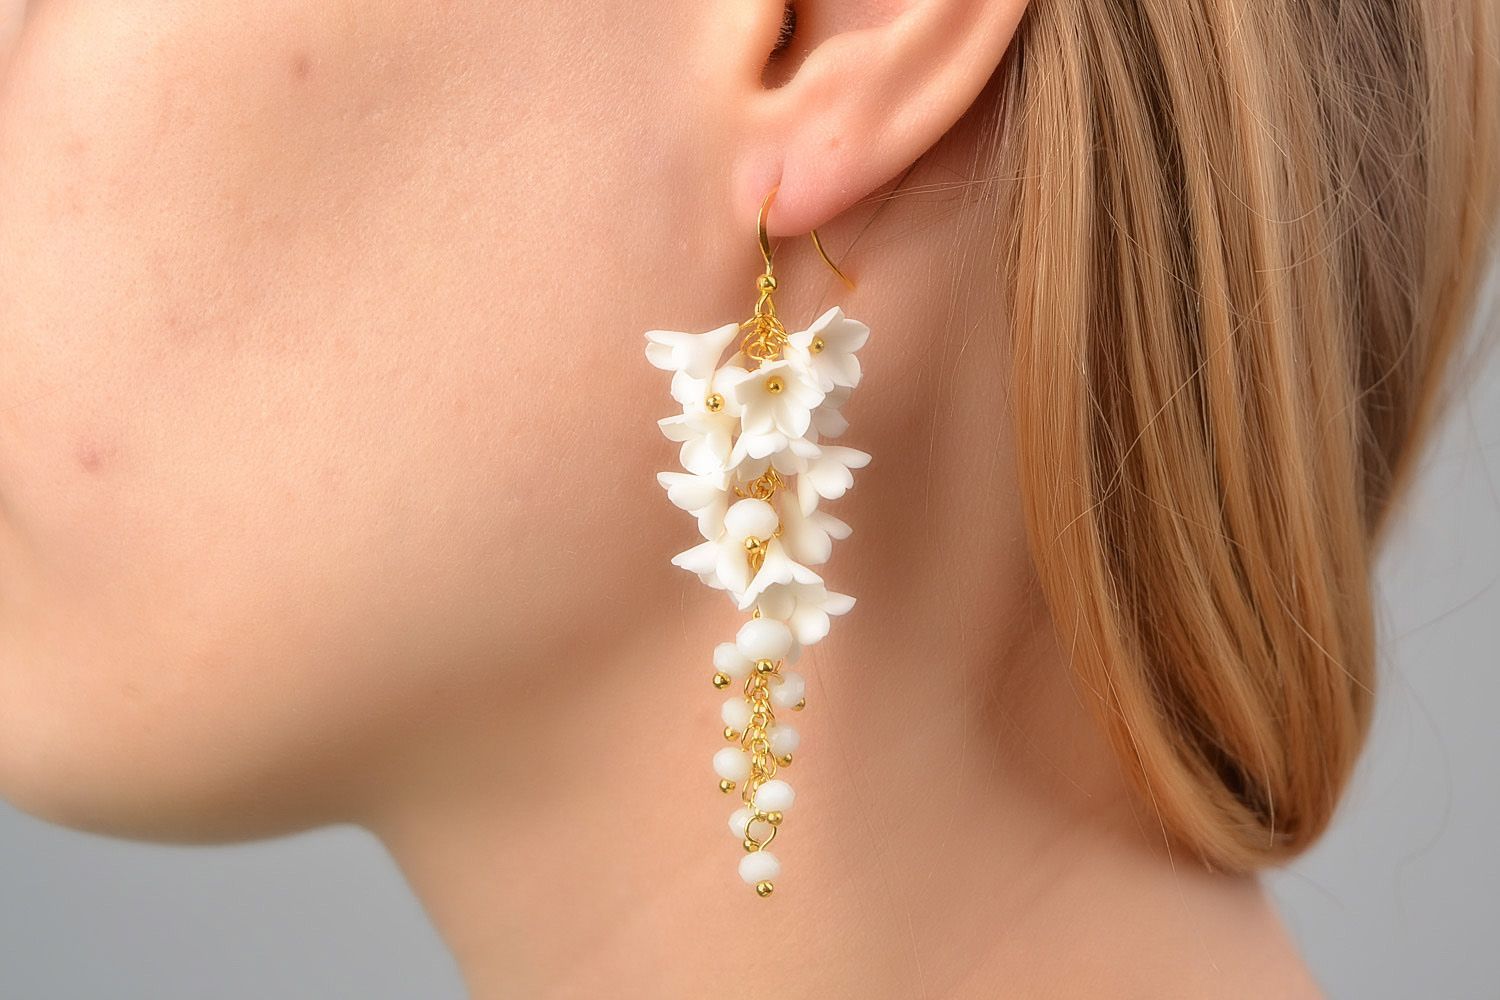 Belles boucles d'oreilles artisanales avec fleurs blanches faites main photo 2